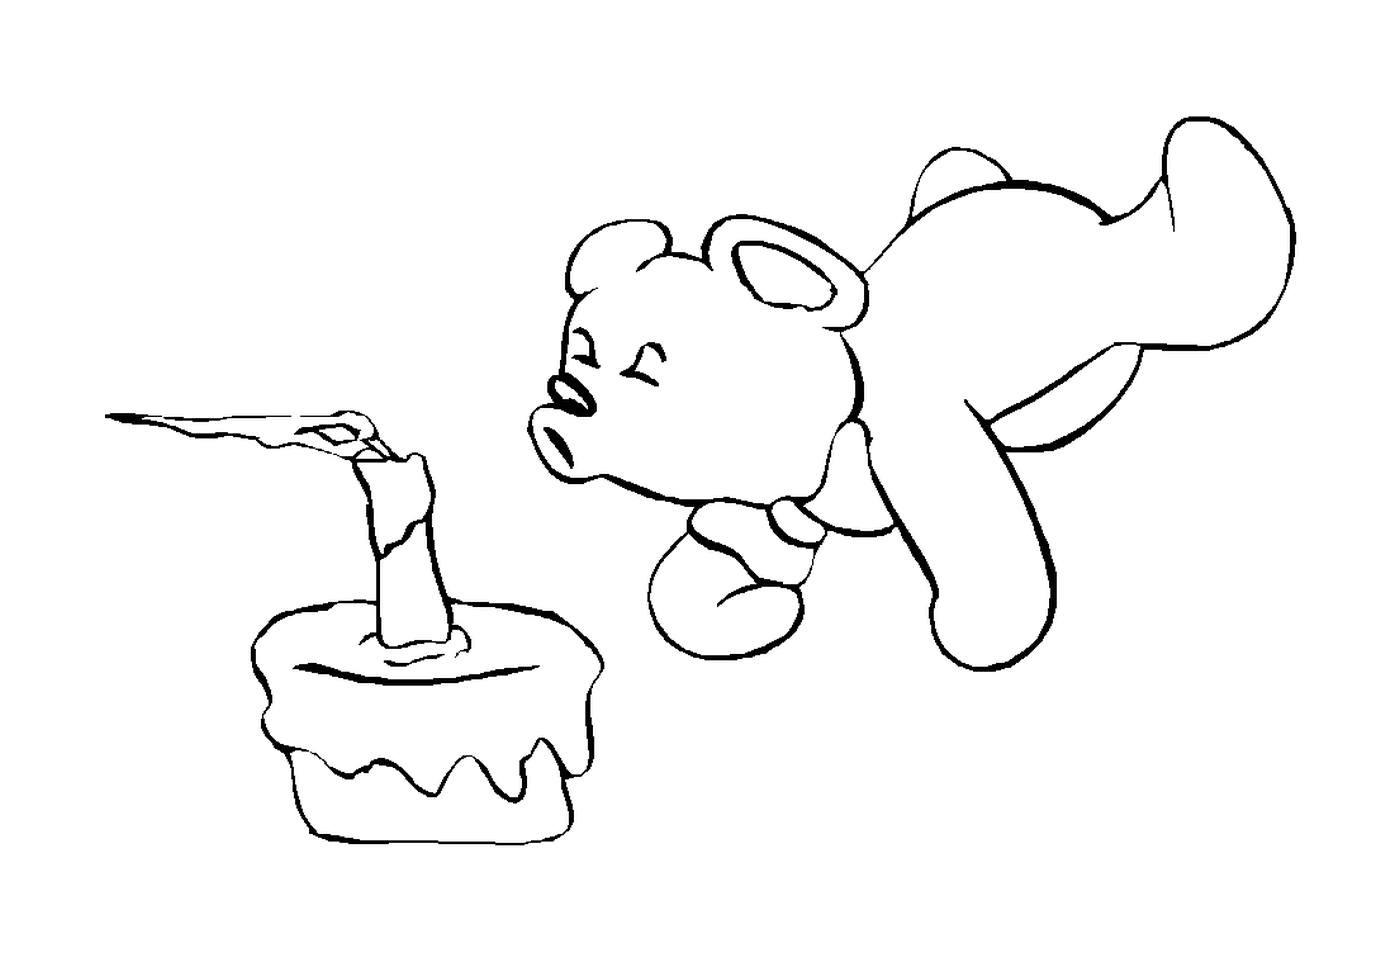  Bär schaut auf einen Kuchen 